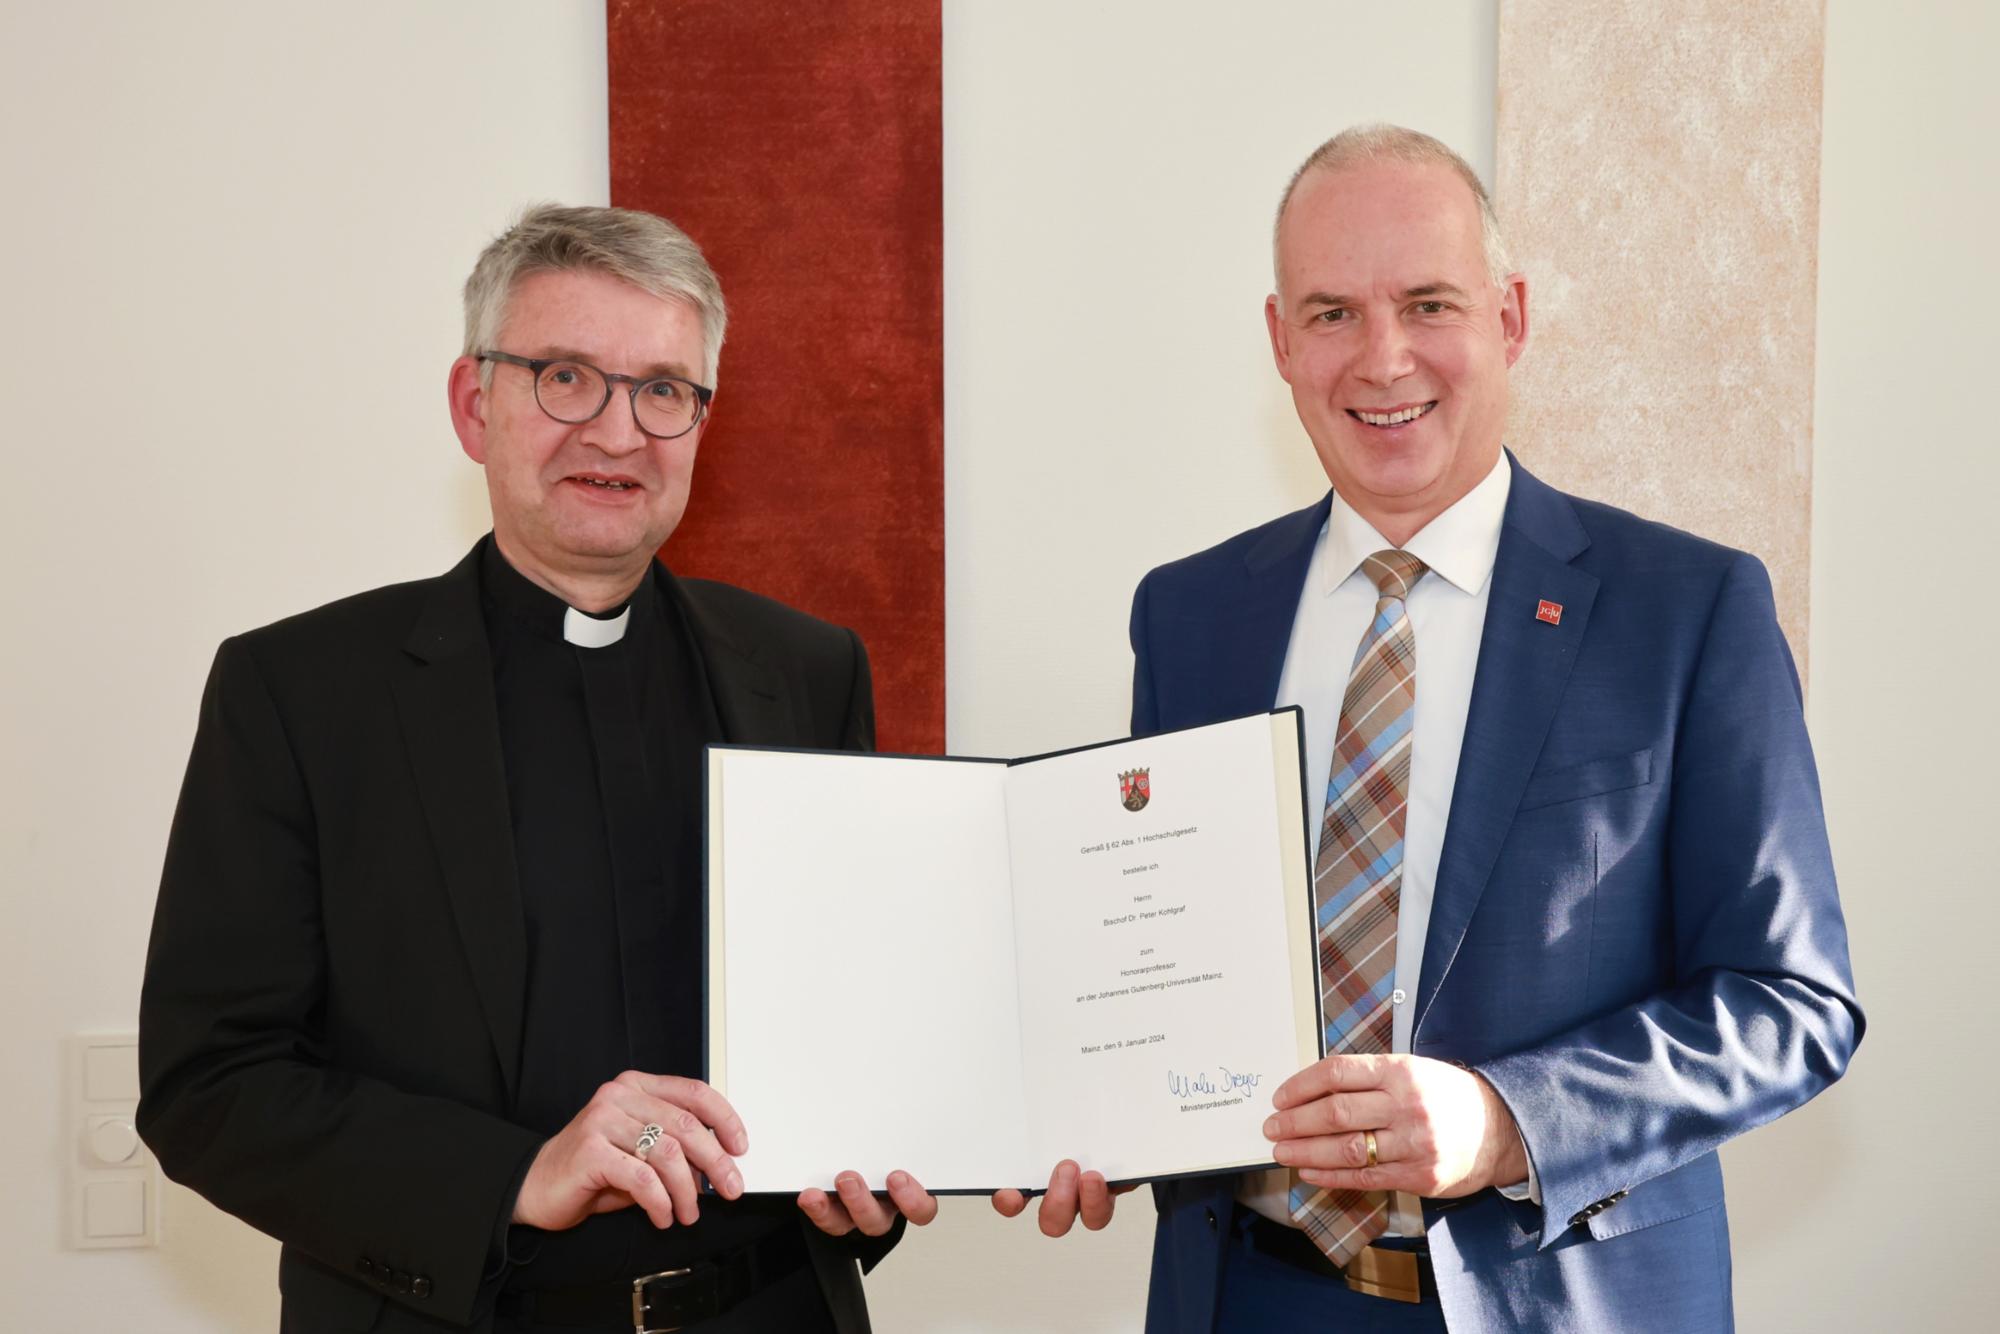 Bischof Peter Kohlgraf erhält die Ernennungsurkunde zum Honorarprofessor der Johannes Gutenberg-Universität Mainz vom Präsidenten der Universität, Georg Krausch